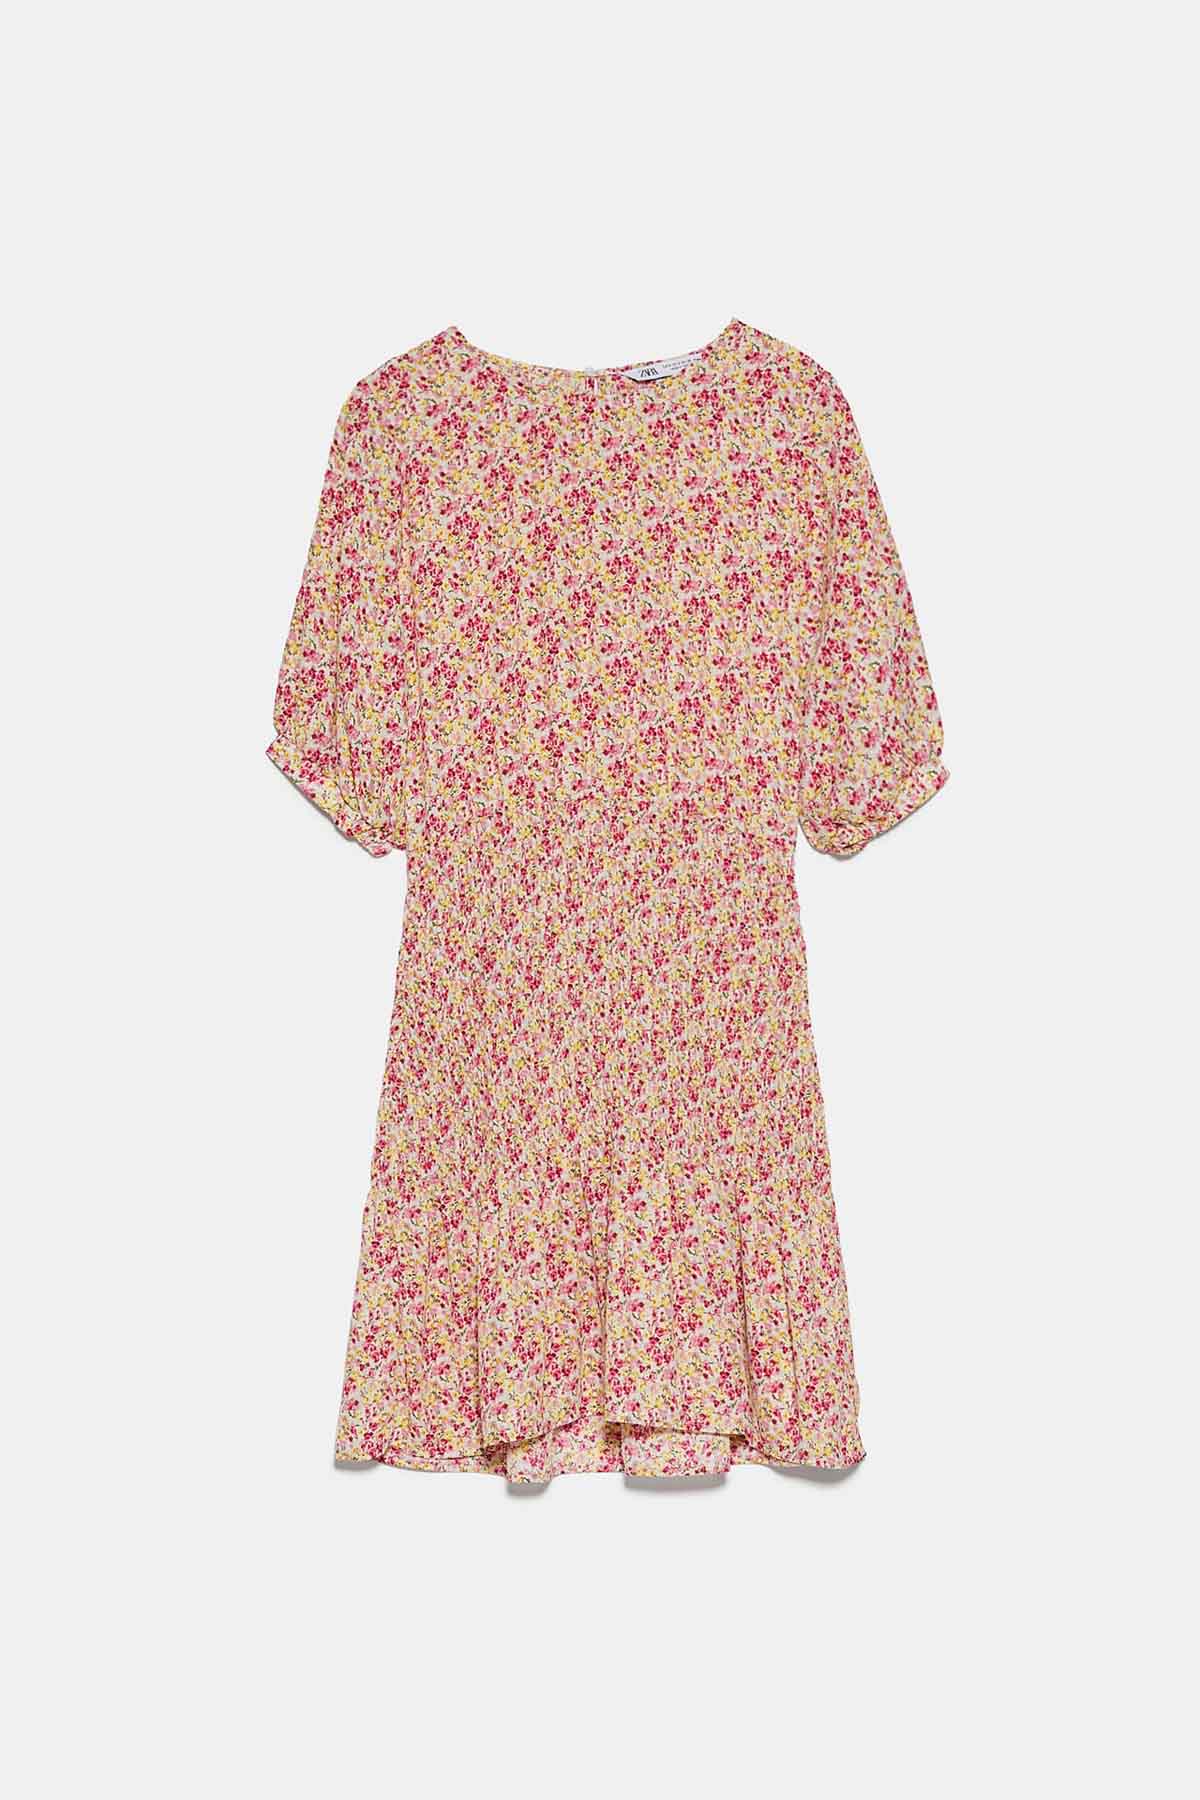 Vestido corto estampado flores de Zara / Zara